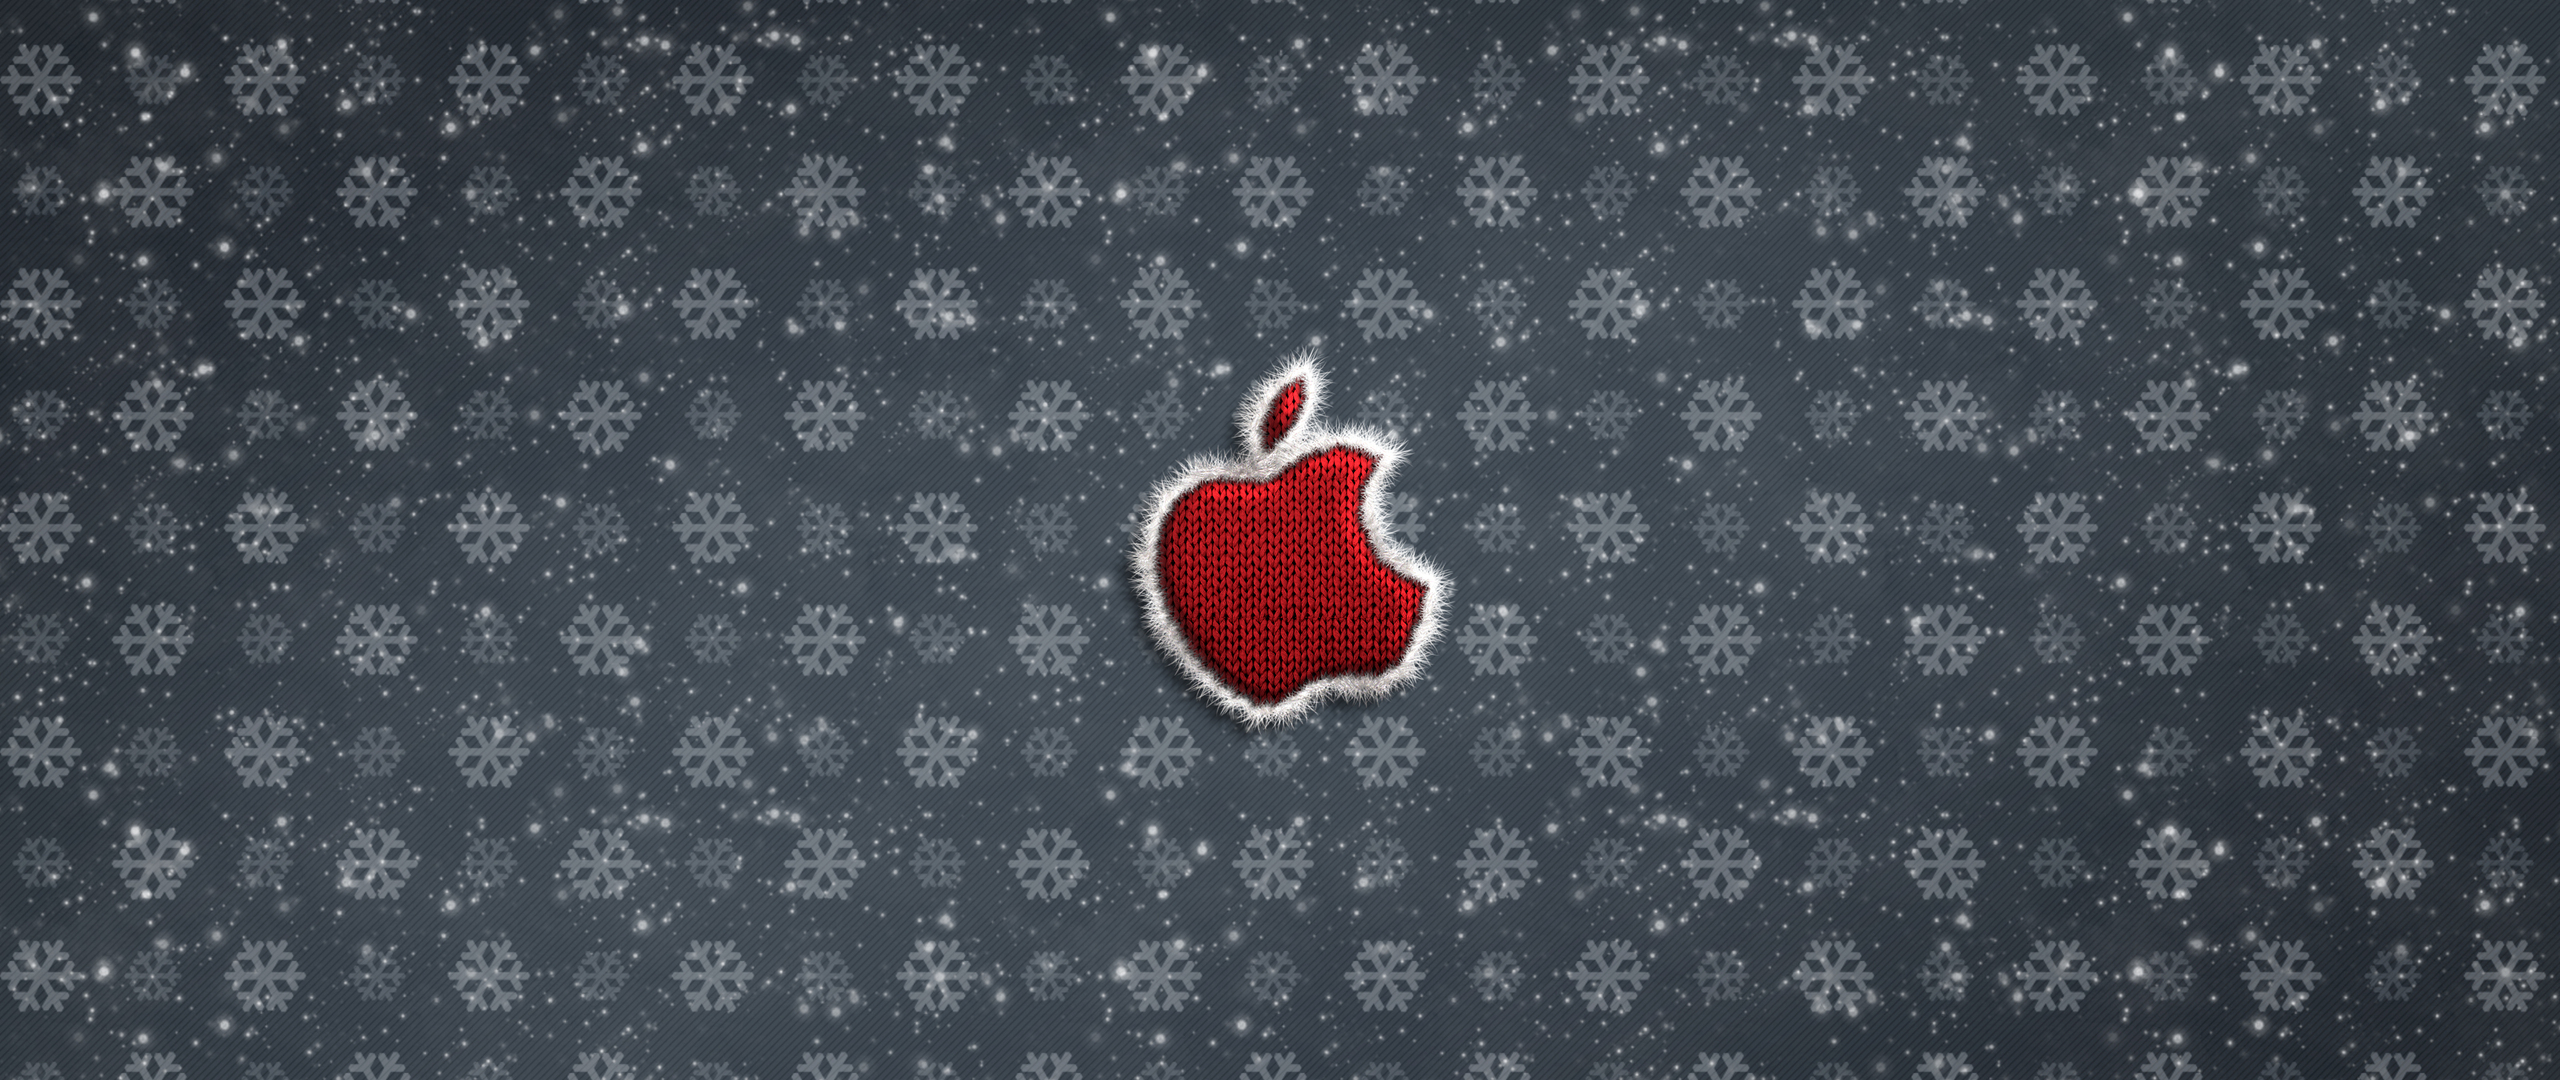 apple-logo-christmas-celebrations-4k-i7.jpg